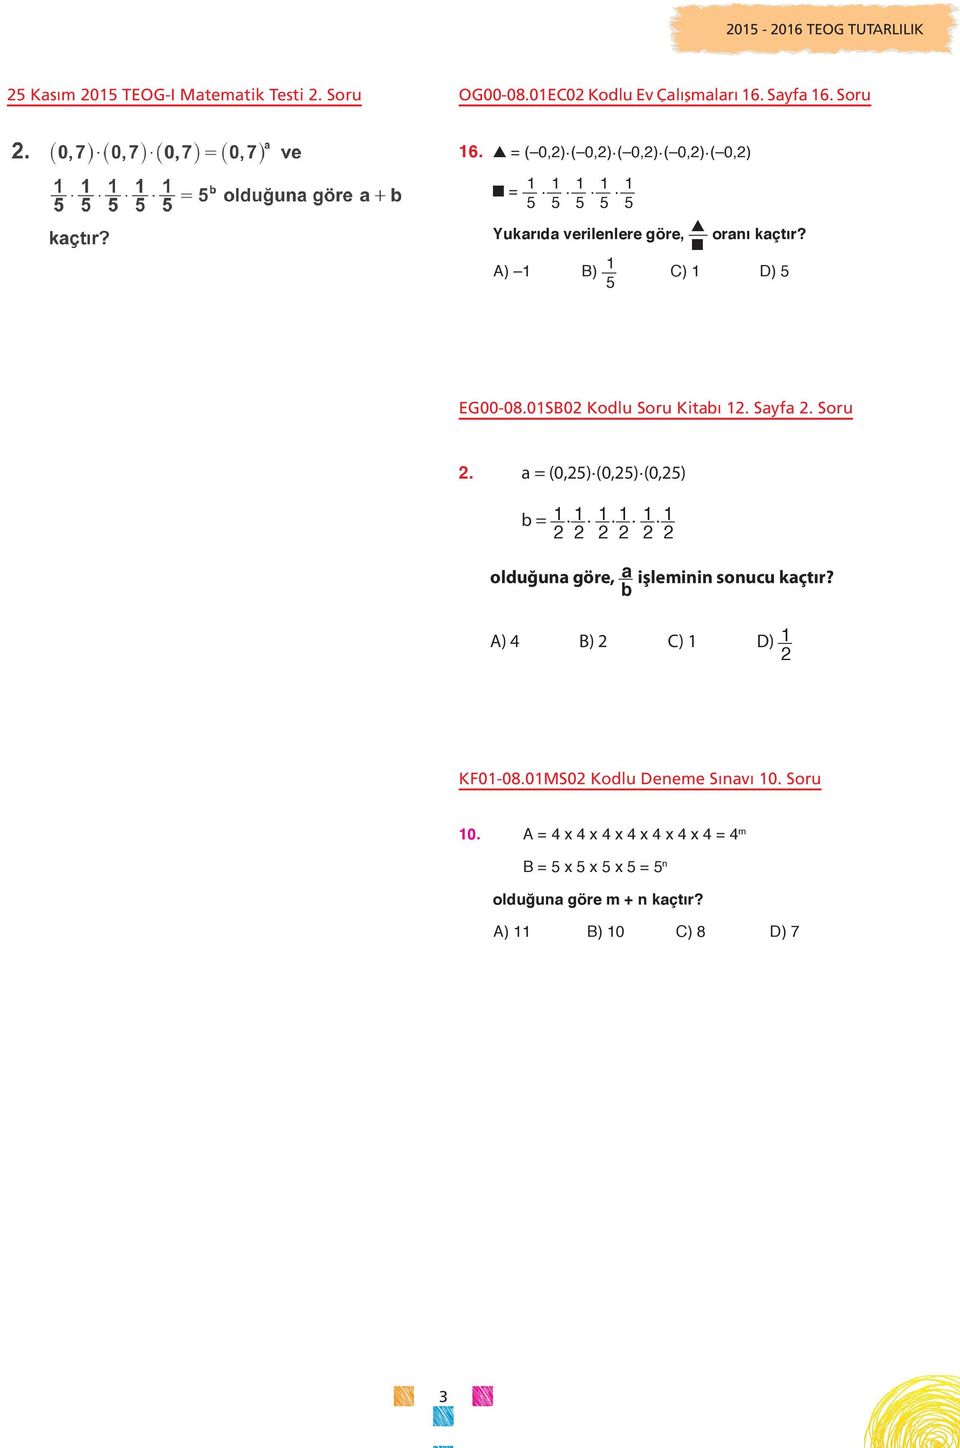 01SB02 Kodlu Soru Kitabı 12. Sayfa 2. Soru 2. a = (0,25).(0,25).(0,25) b = 1 2. 1 2. 1 2. 1 2. 1 2. 1 2 olduğuna göre, a işleminin sonucu kaçtır?